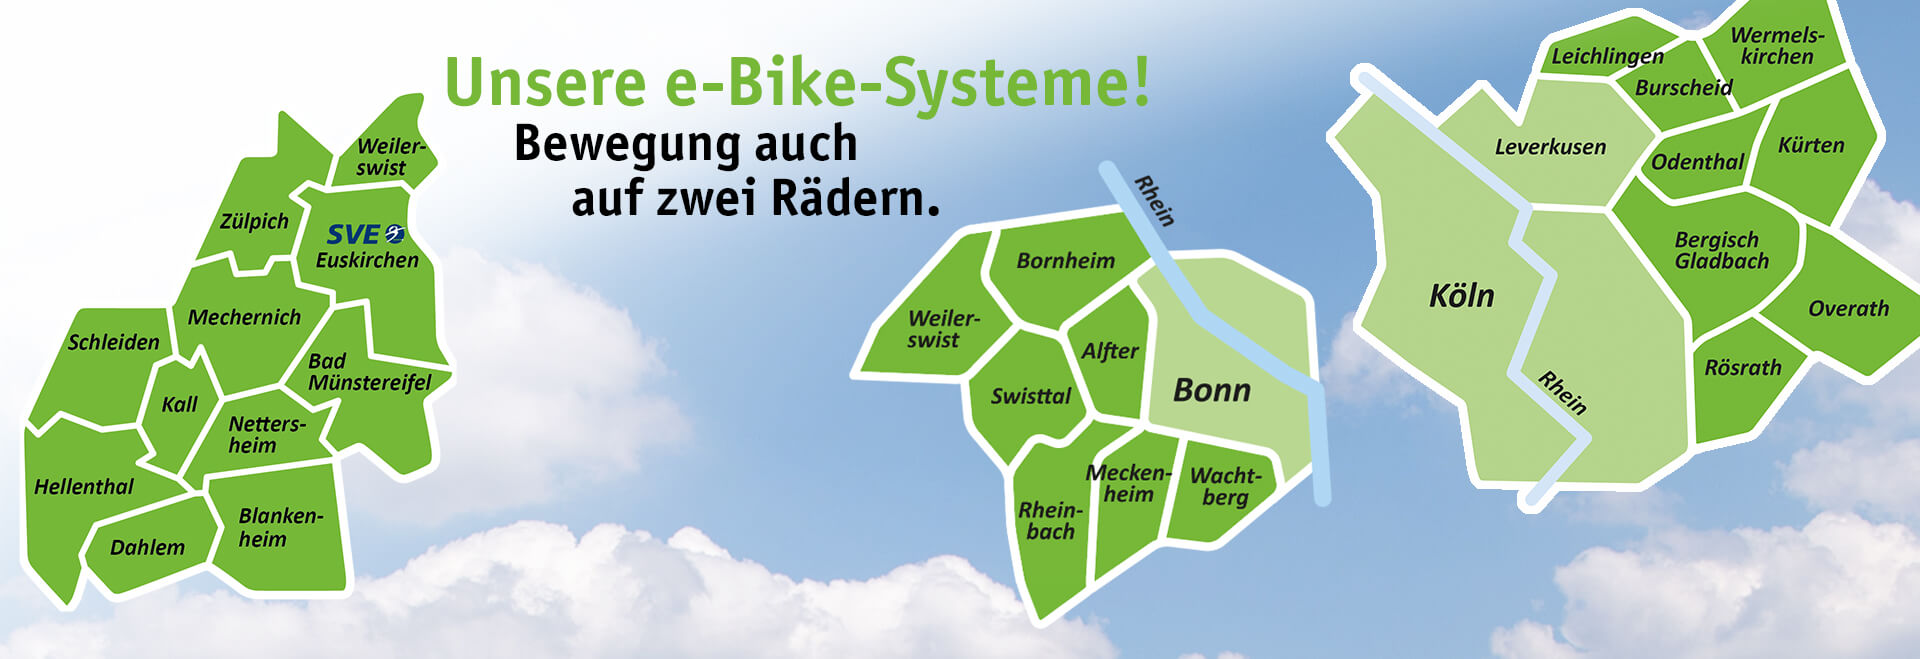 Übersicht Karten e-Bike-Systeme